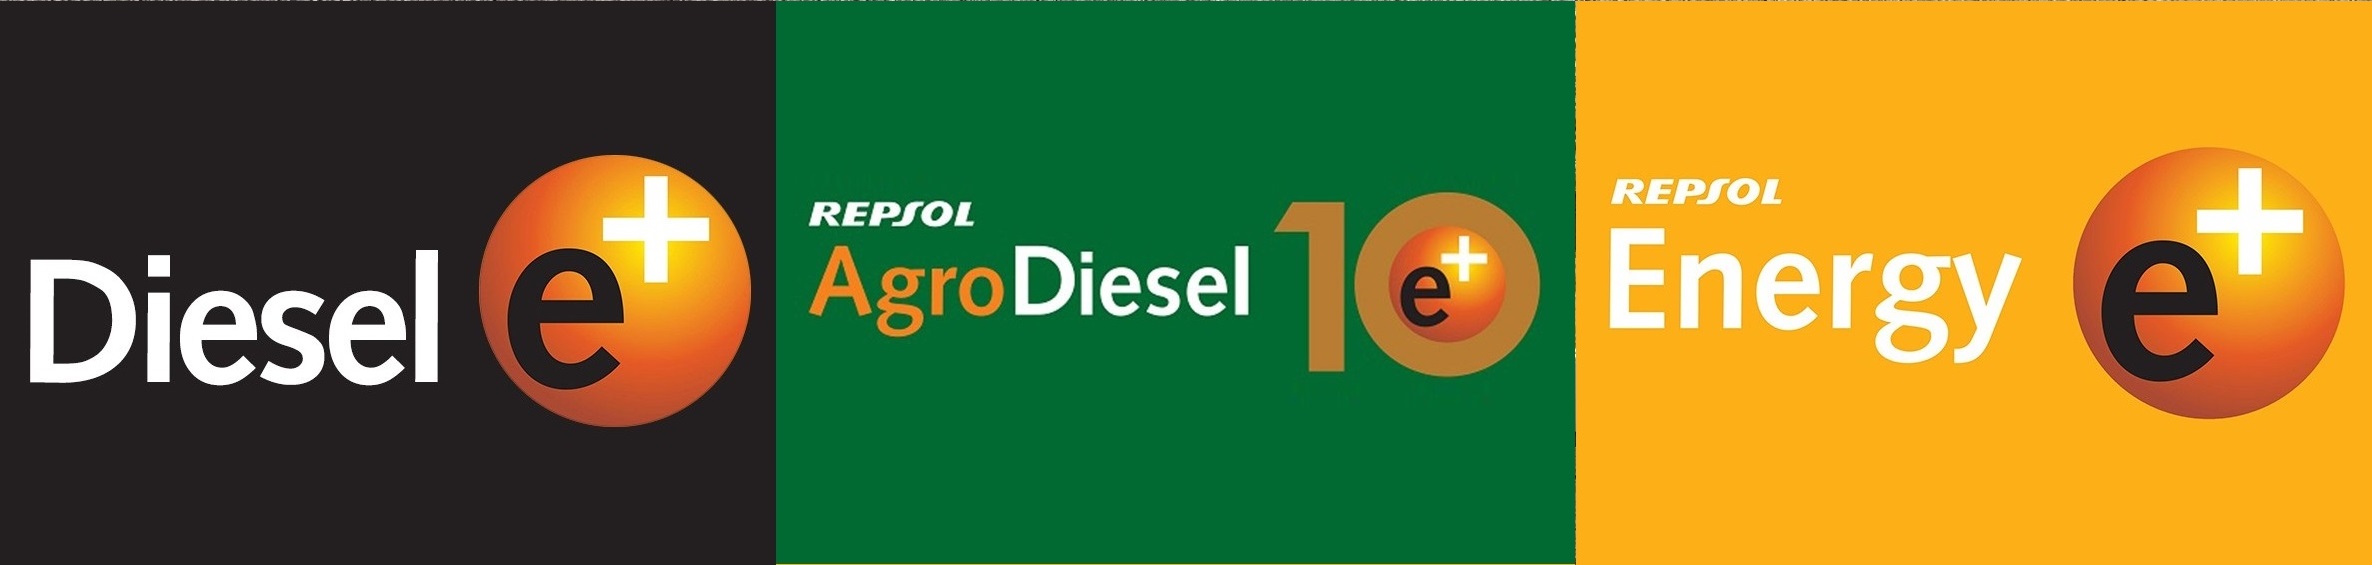 Combustibles Y Carburantes Puertollano logos